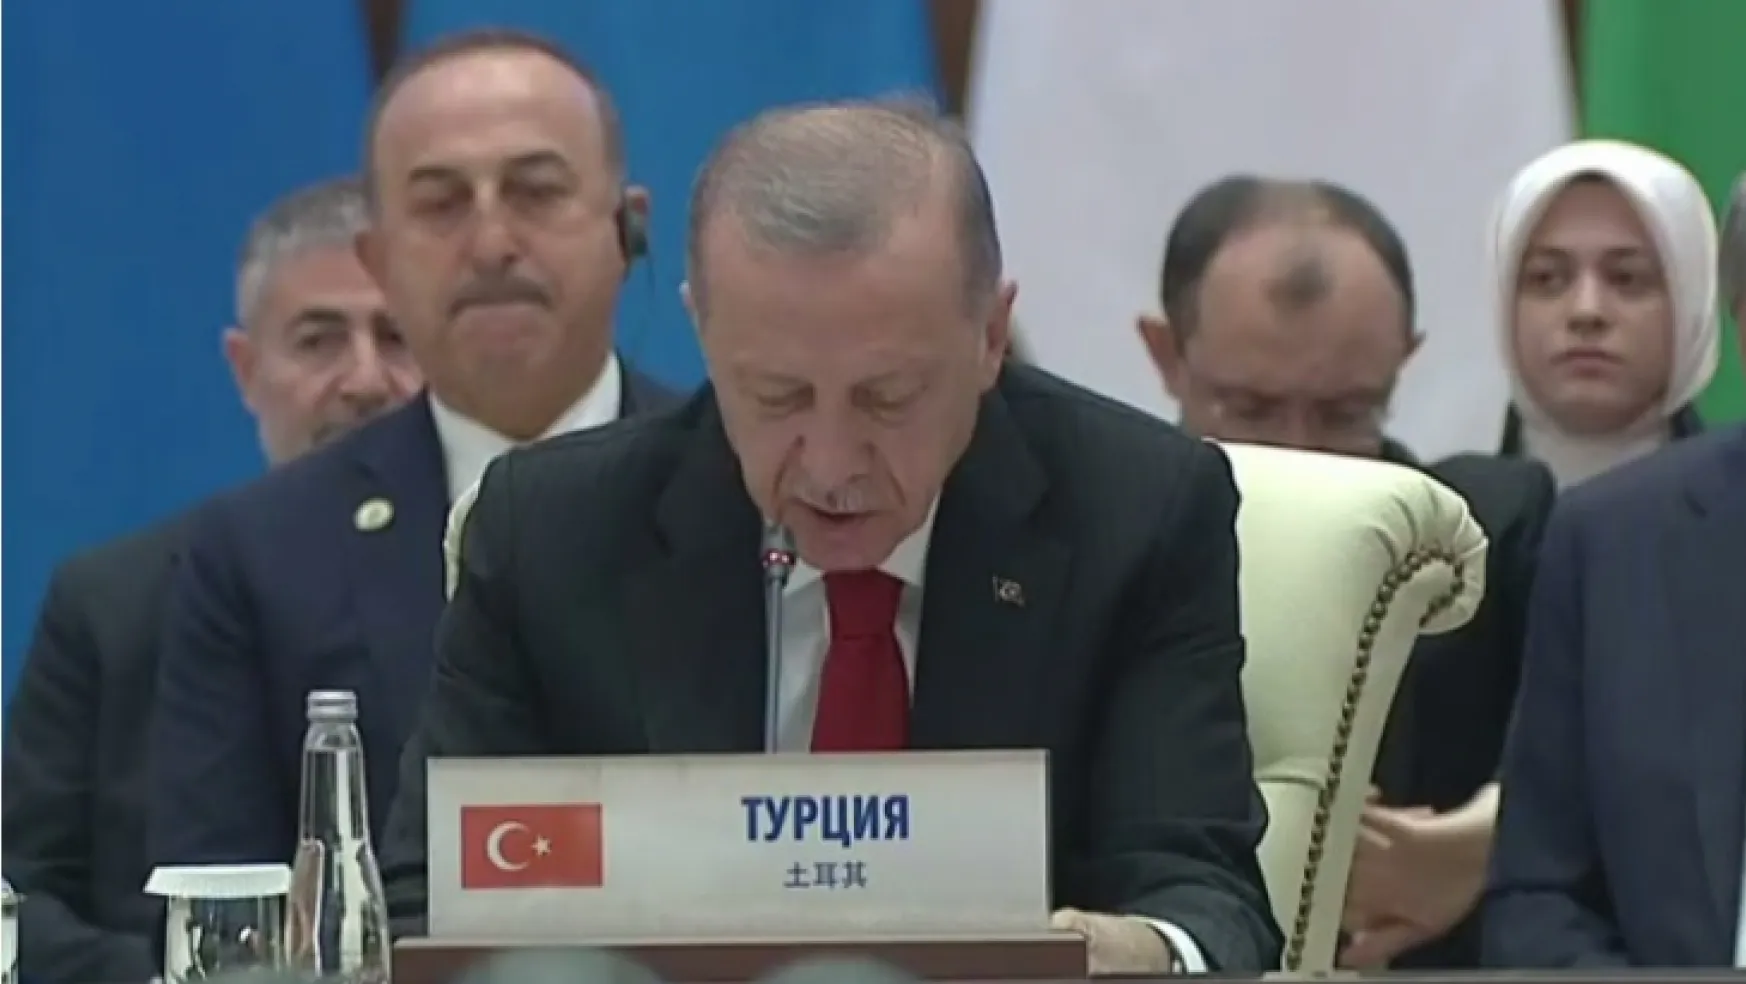 Özbekistan'da konuşan Erdoğan'dan Ukrayna mesajı